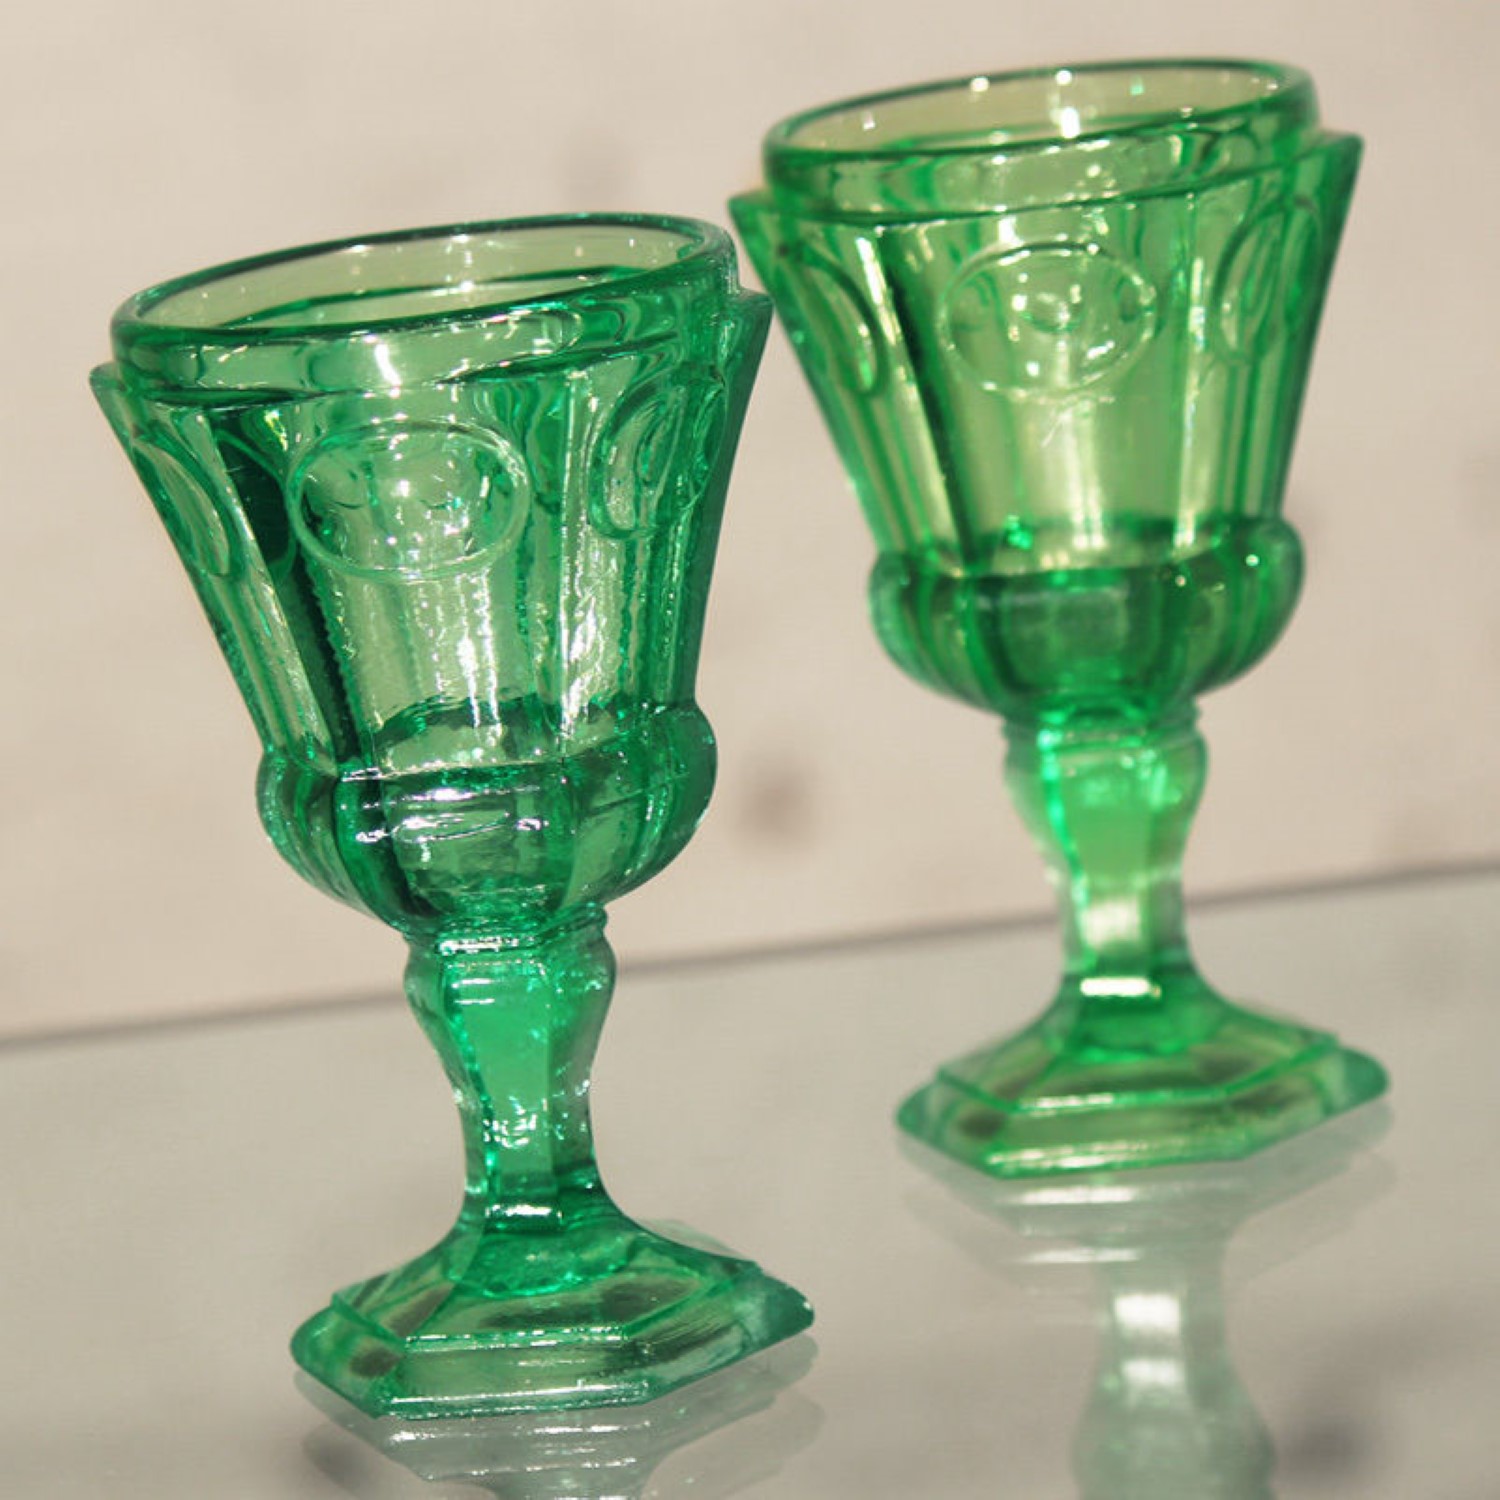 Russian Hexagonal Green Glass Water Goblets